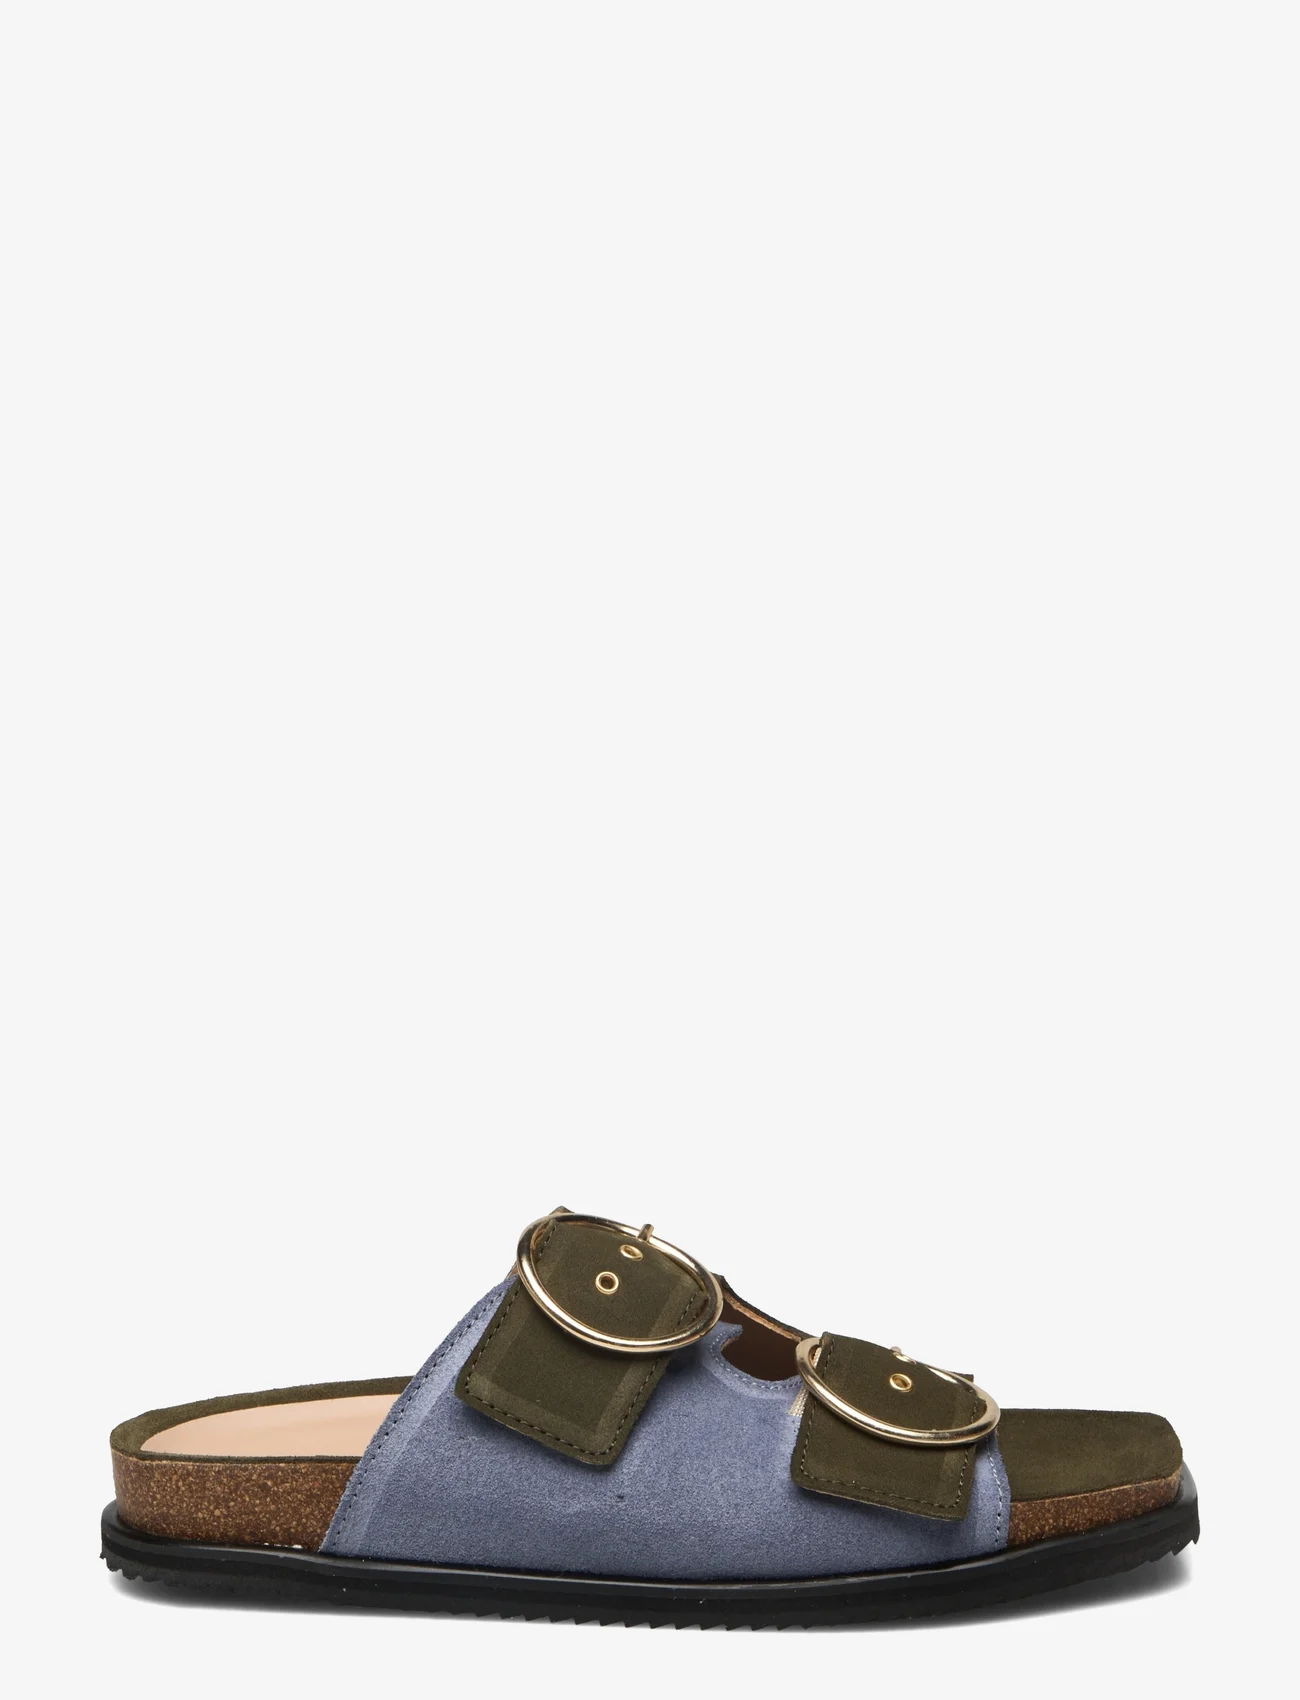 ANGULUS - Sandals - flat - open toe - op - flate sandaler - 2244/2242 light blue/green - 1